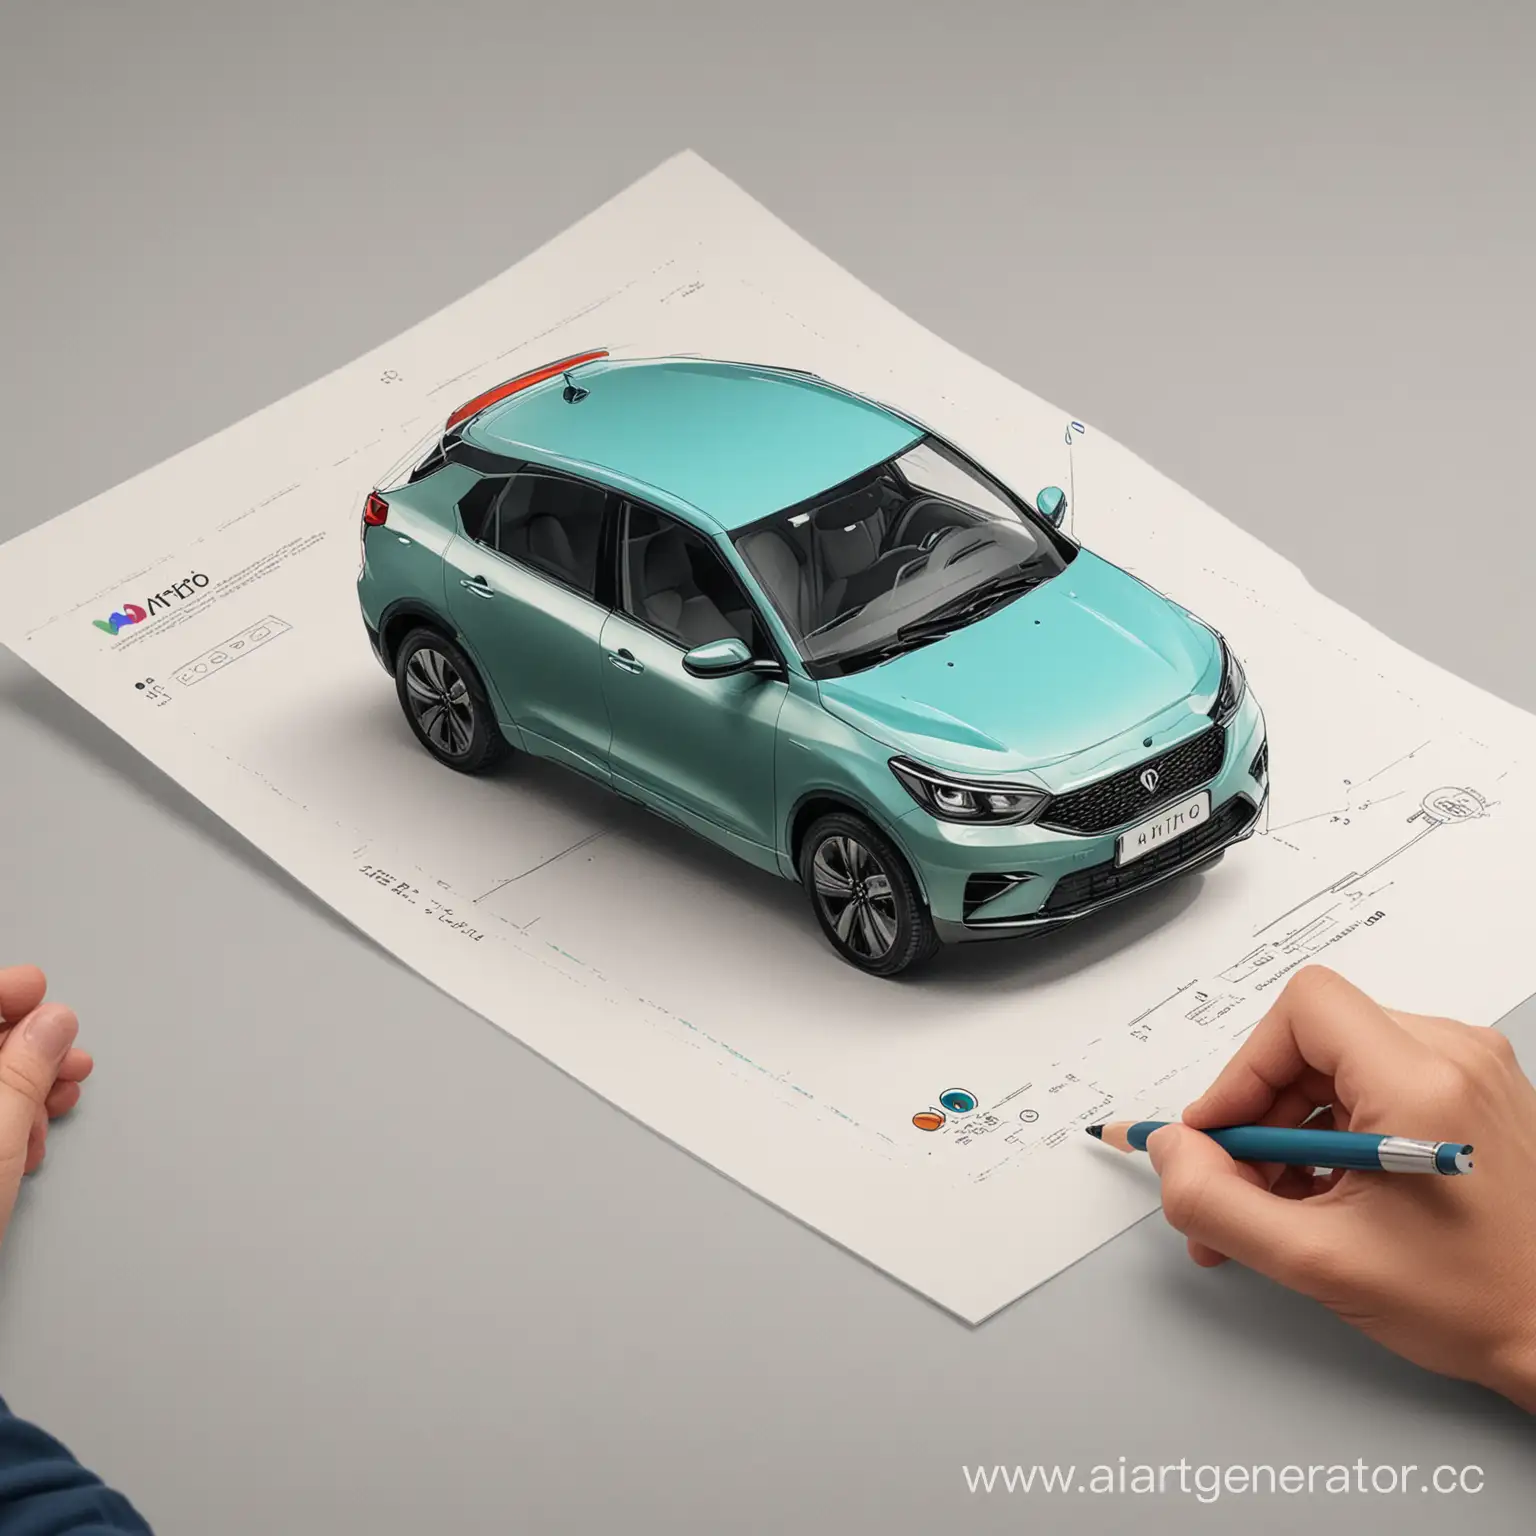 Покупка автомобиля человеком на сайте Авито. рисунок в цветах Авито